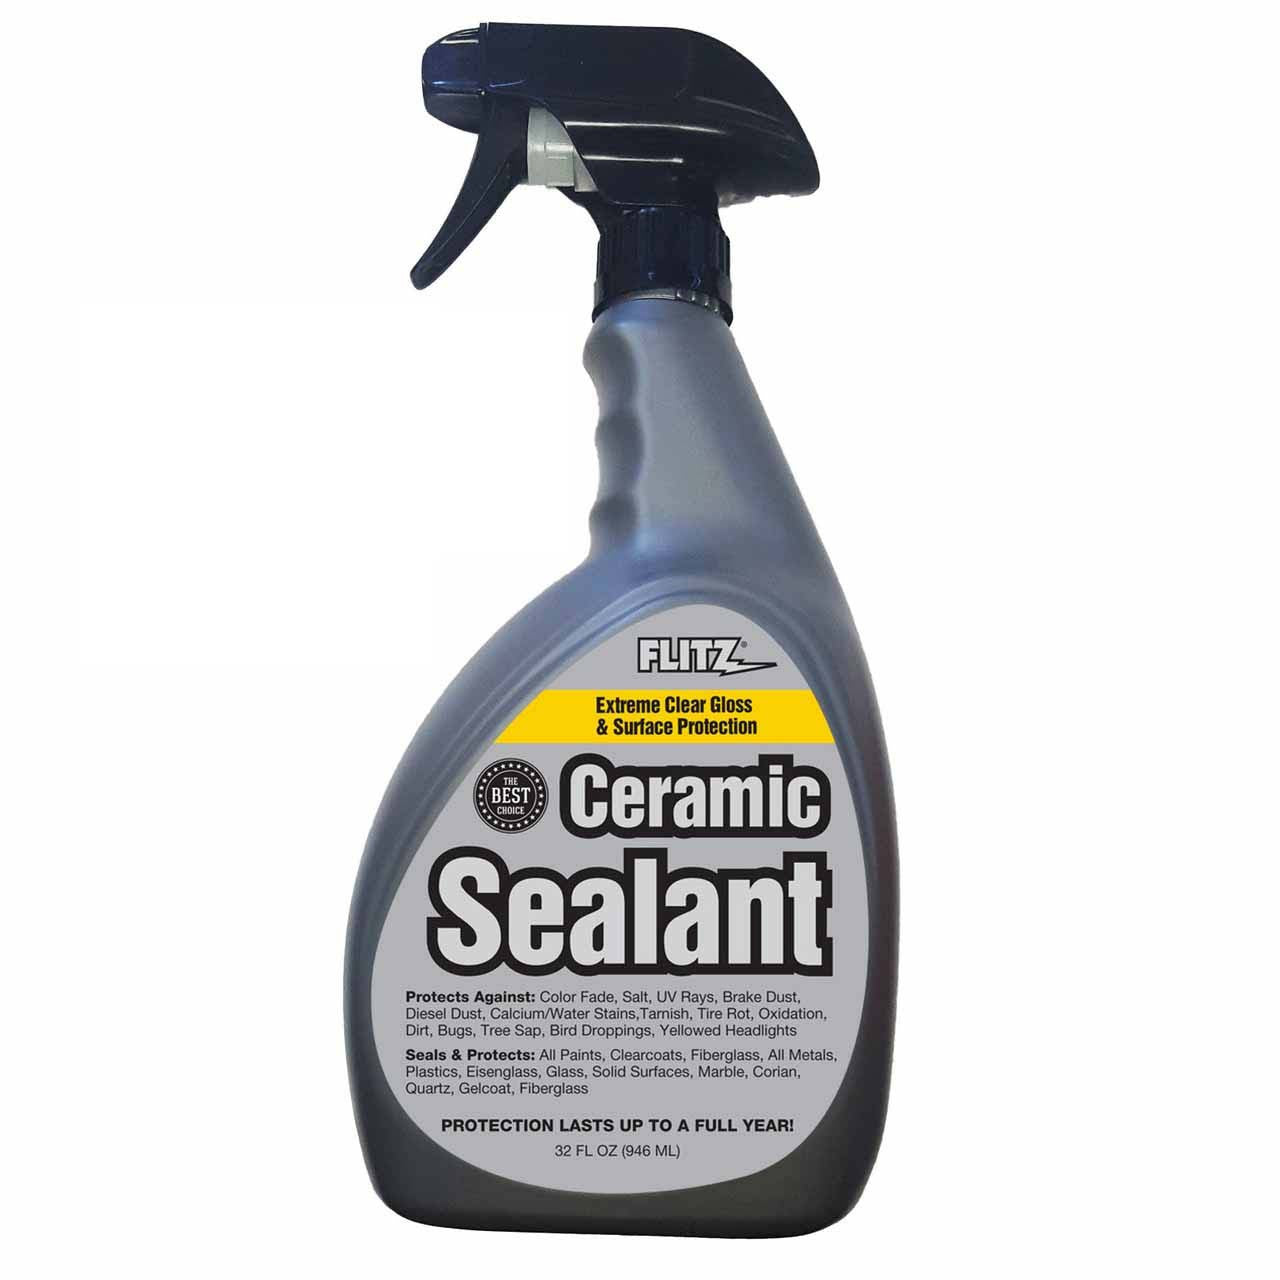 Ceramic Sealant